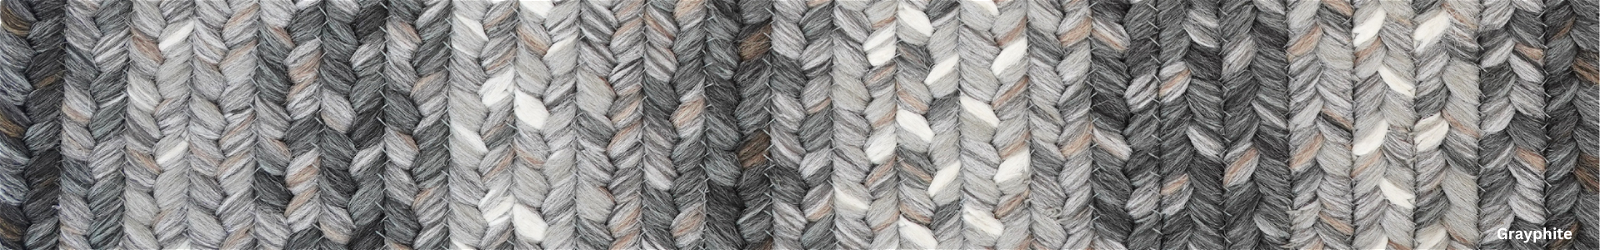 Polypropylene - Outdoor-Indoor - Grey Braided Rugs